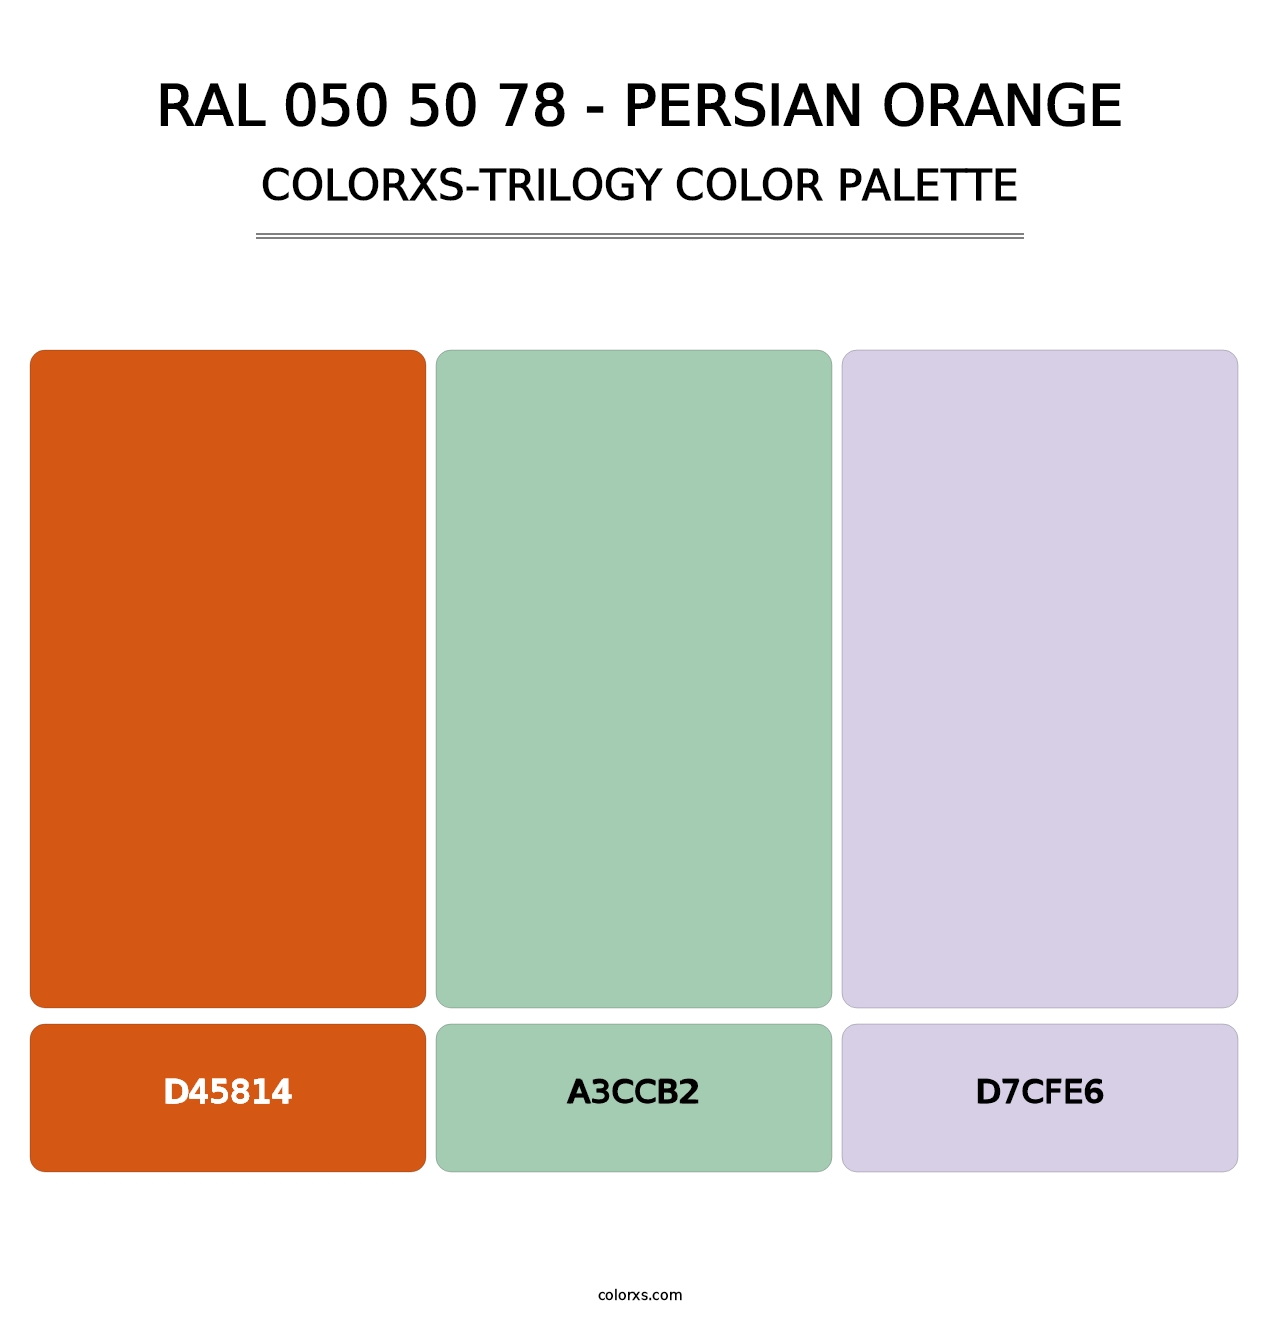 RAL 050 50 78 - Persian Orange - Colorxs Trilogy Palette